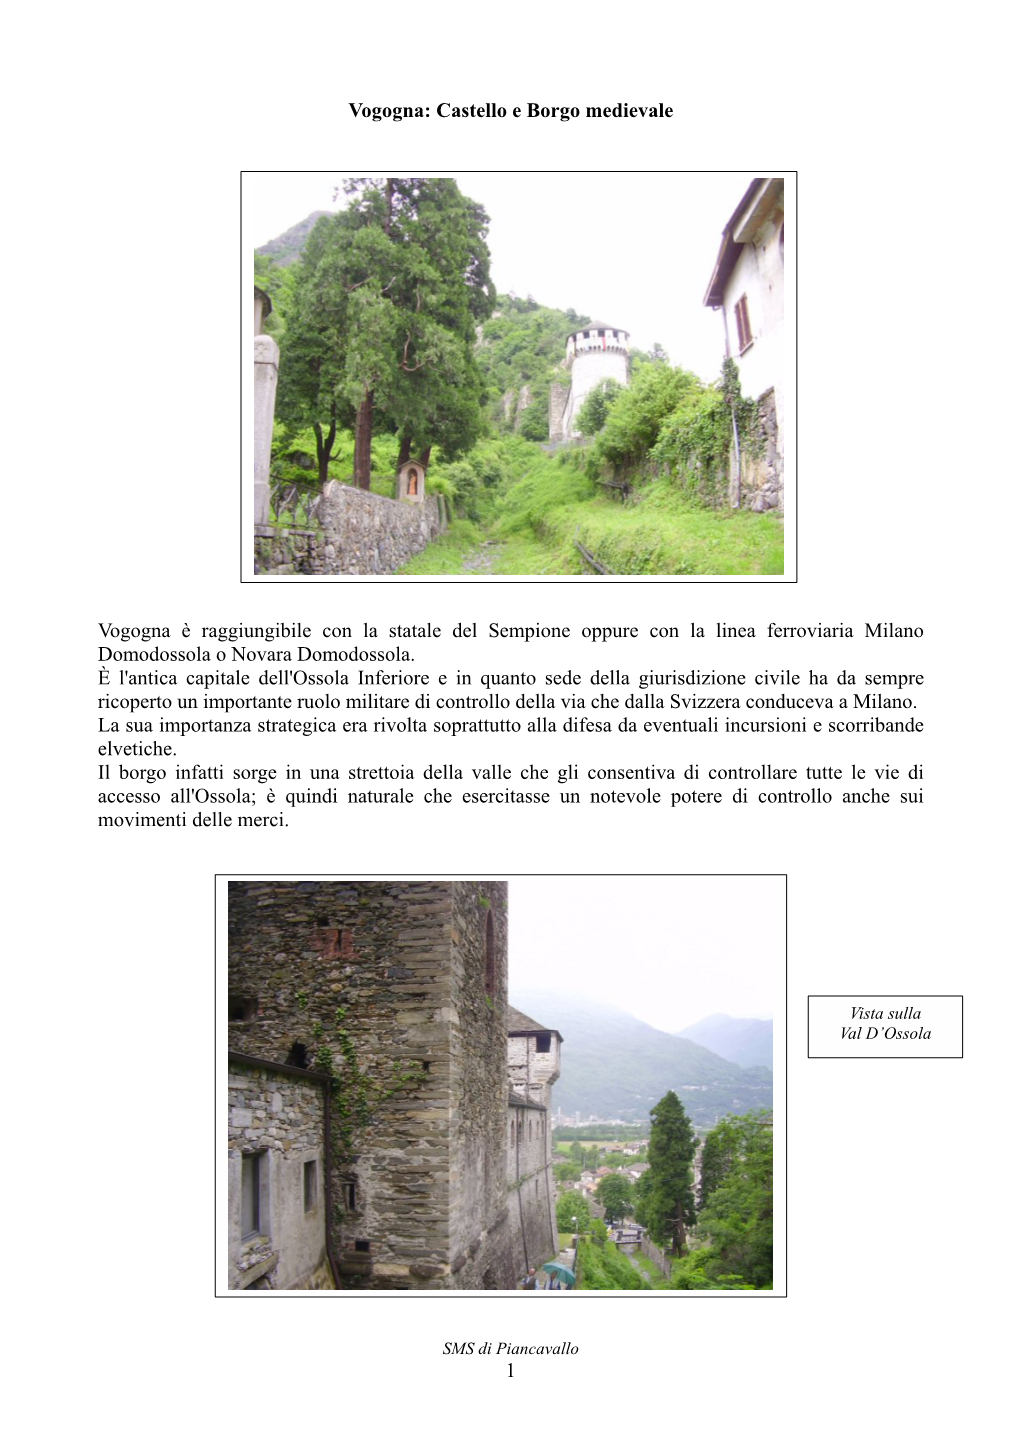 Castello E Borgo Medievale Vogogna È Raggiungibile Con La Statale Del